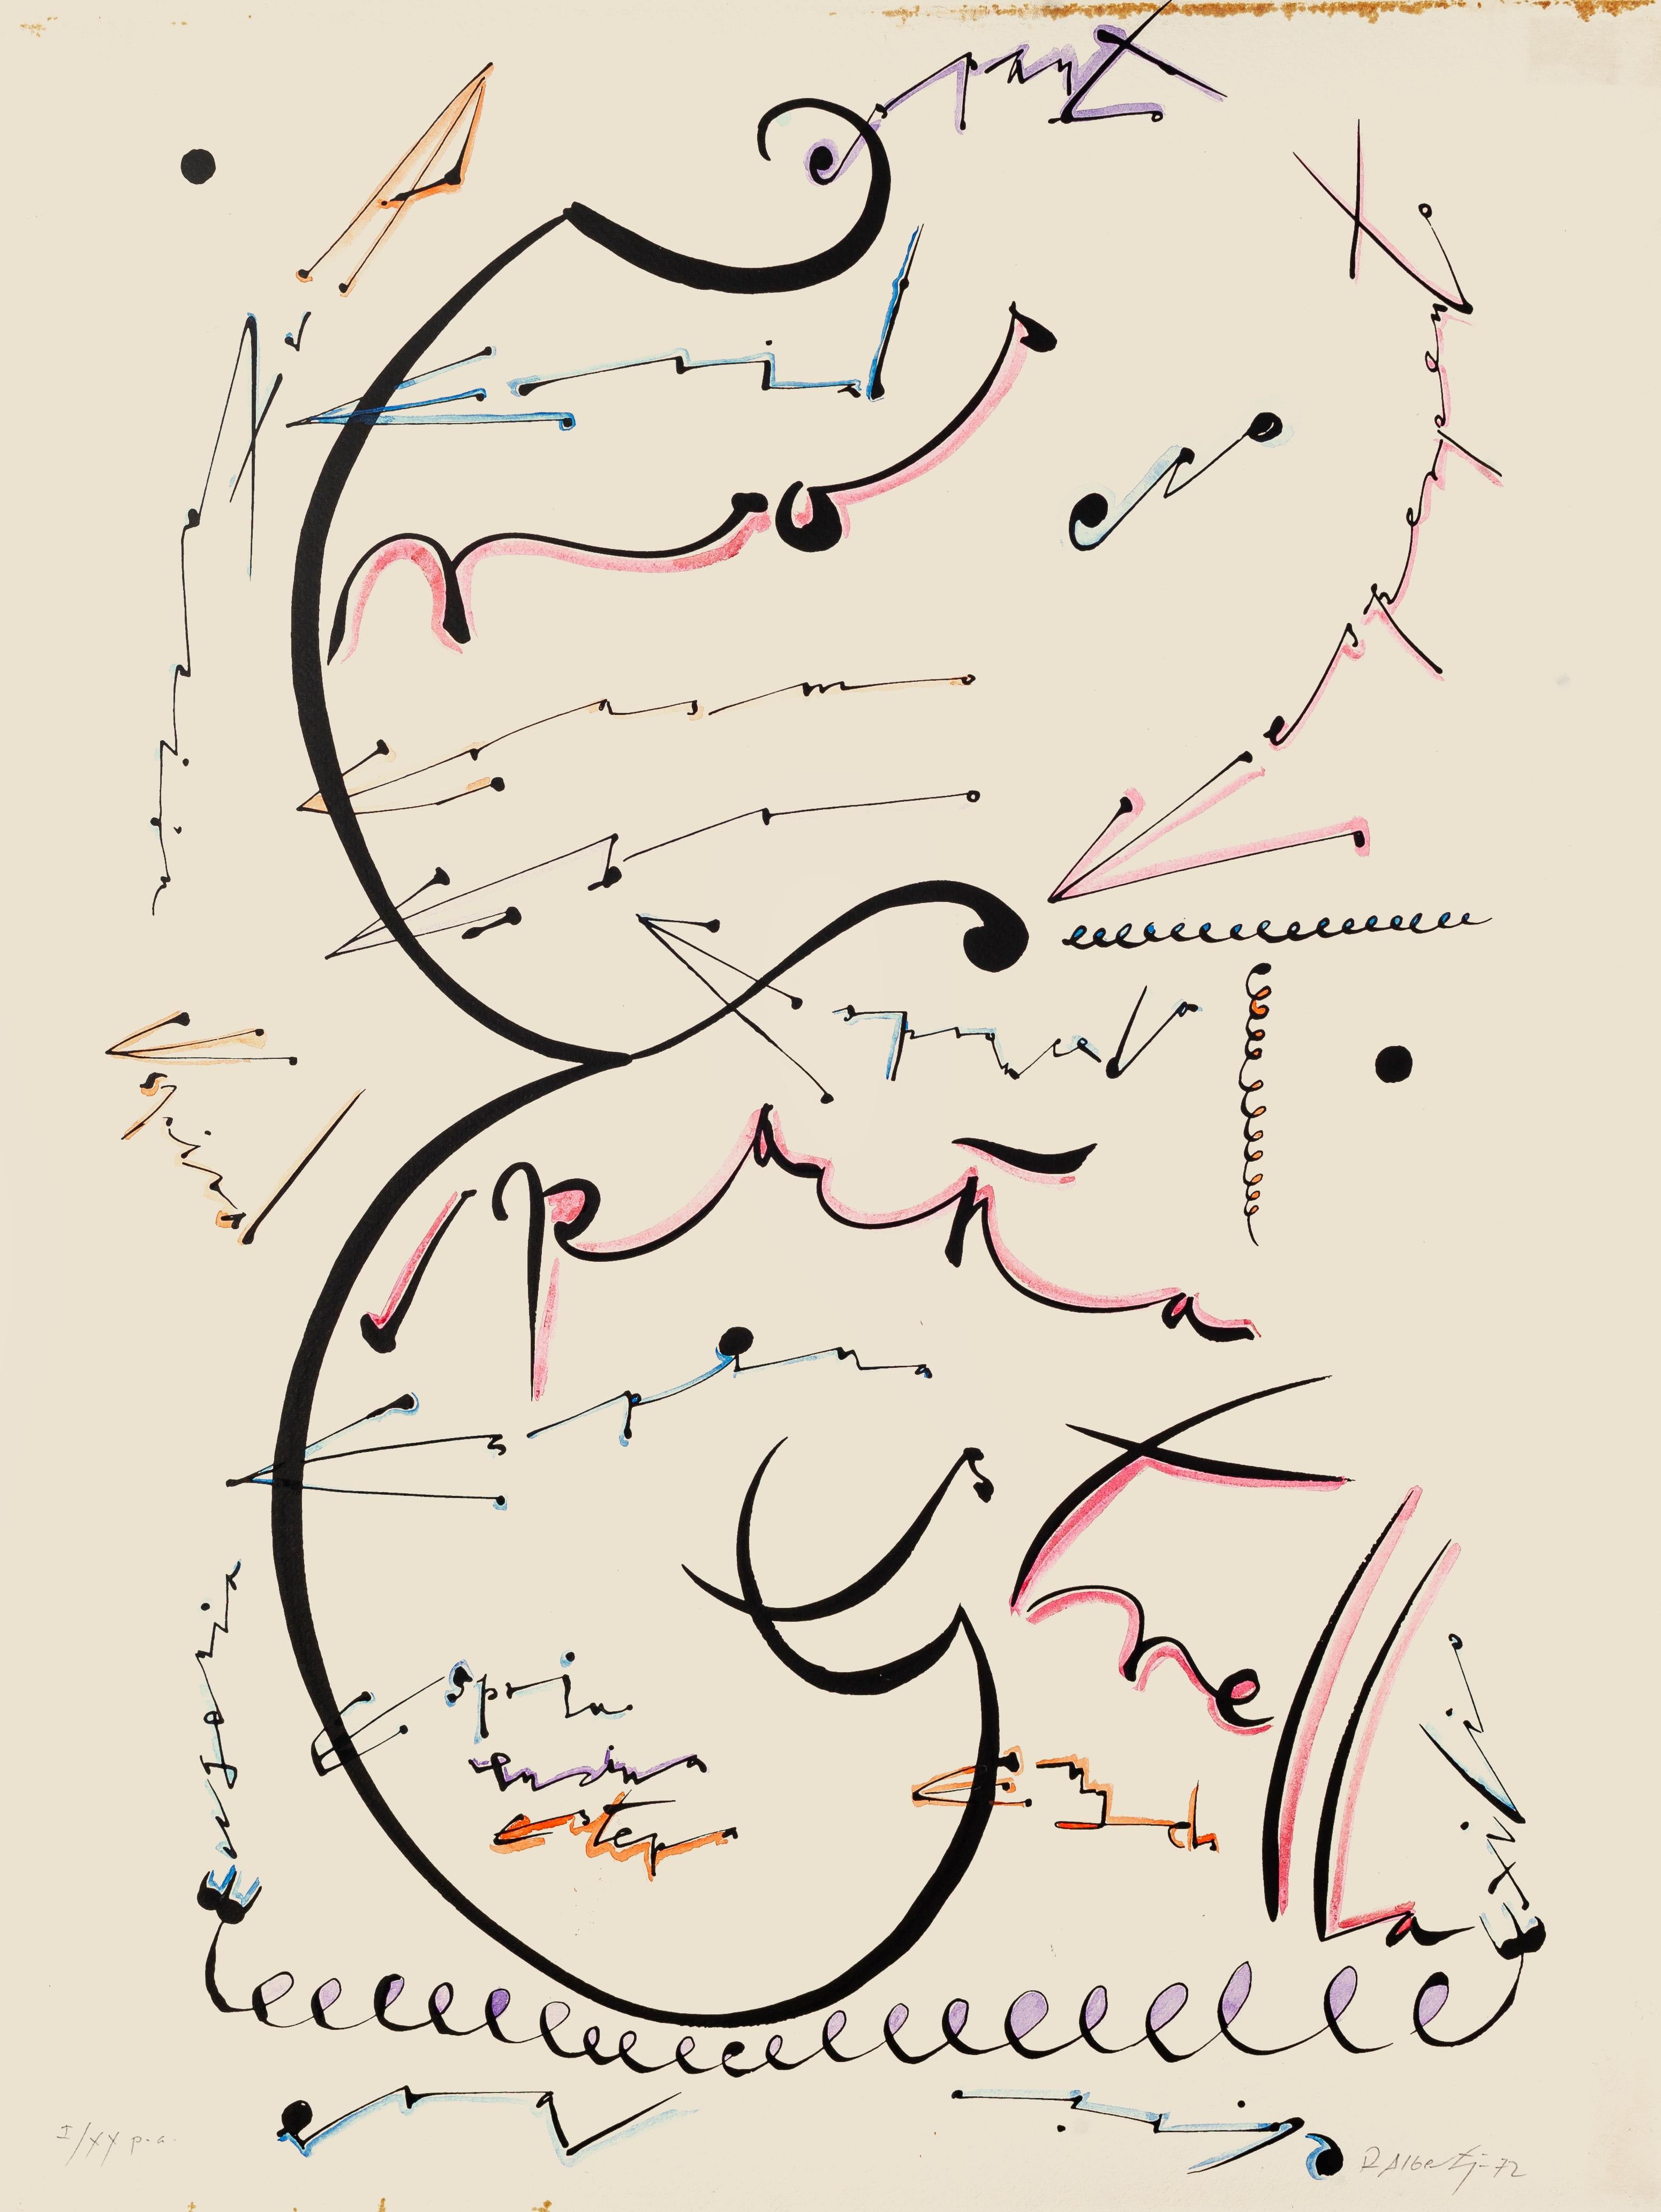 Rafael Alberti Abstract Print - Letter E - Original Lithograph by Raphael Alberti - 1972